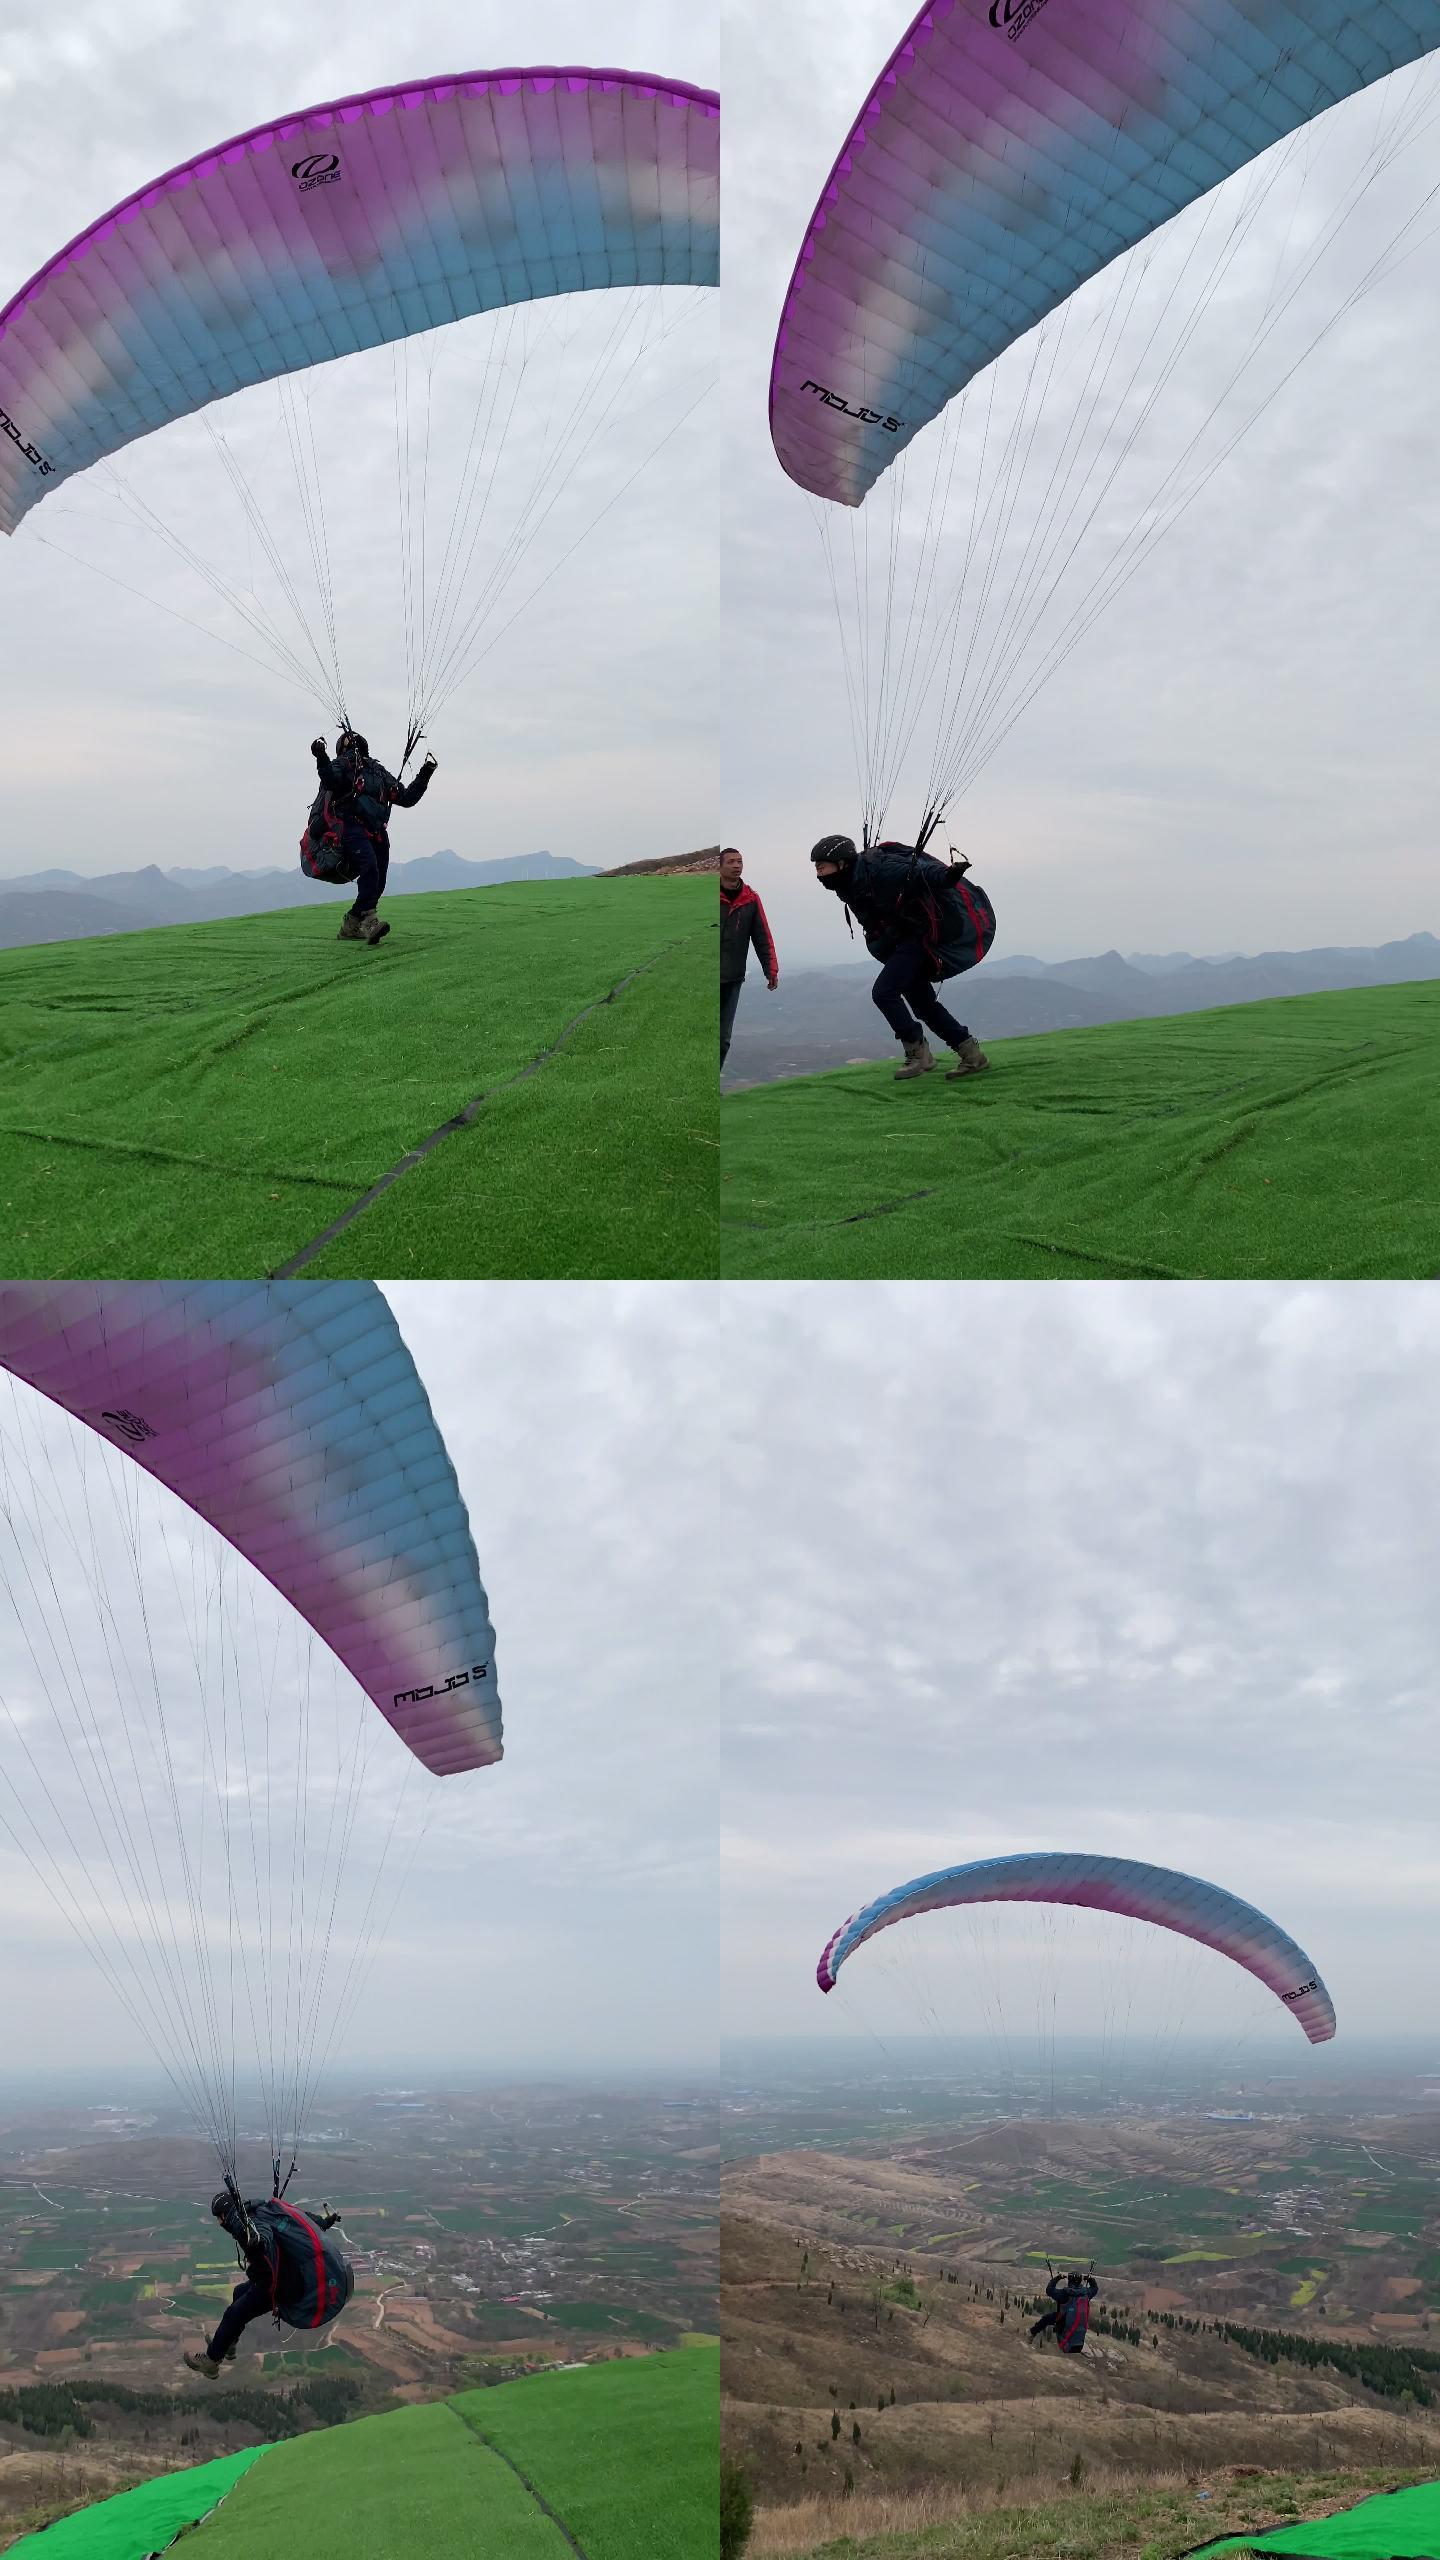 具茨山山顶滑翔伞起飞观众欢呼